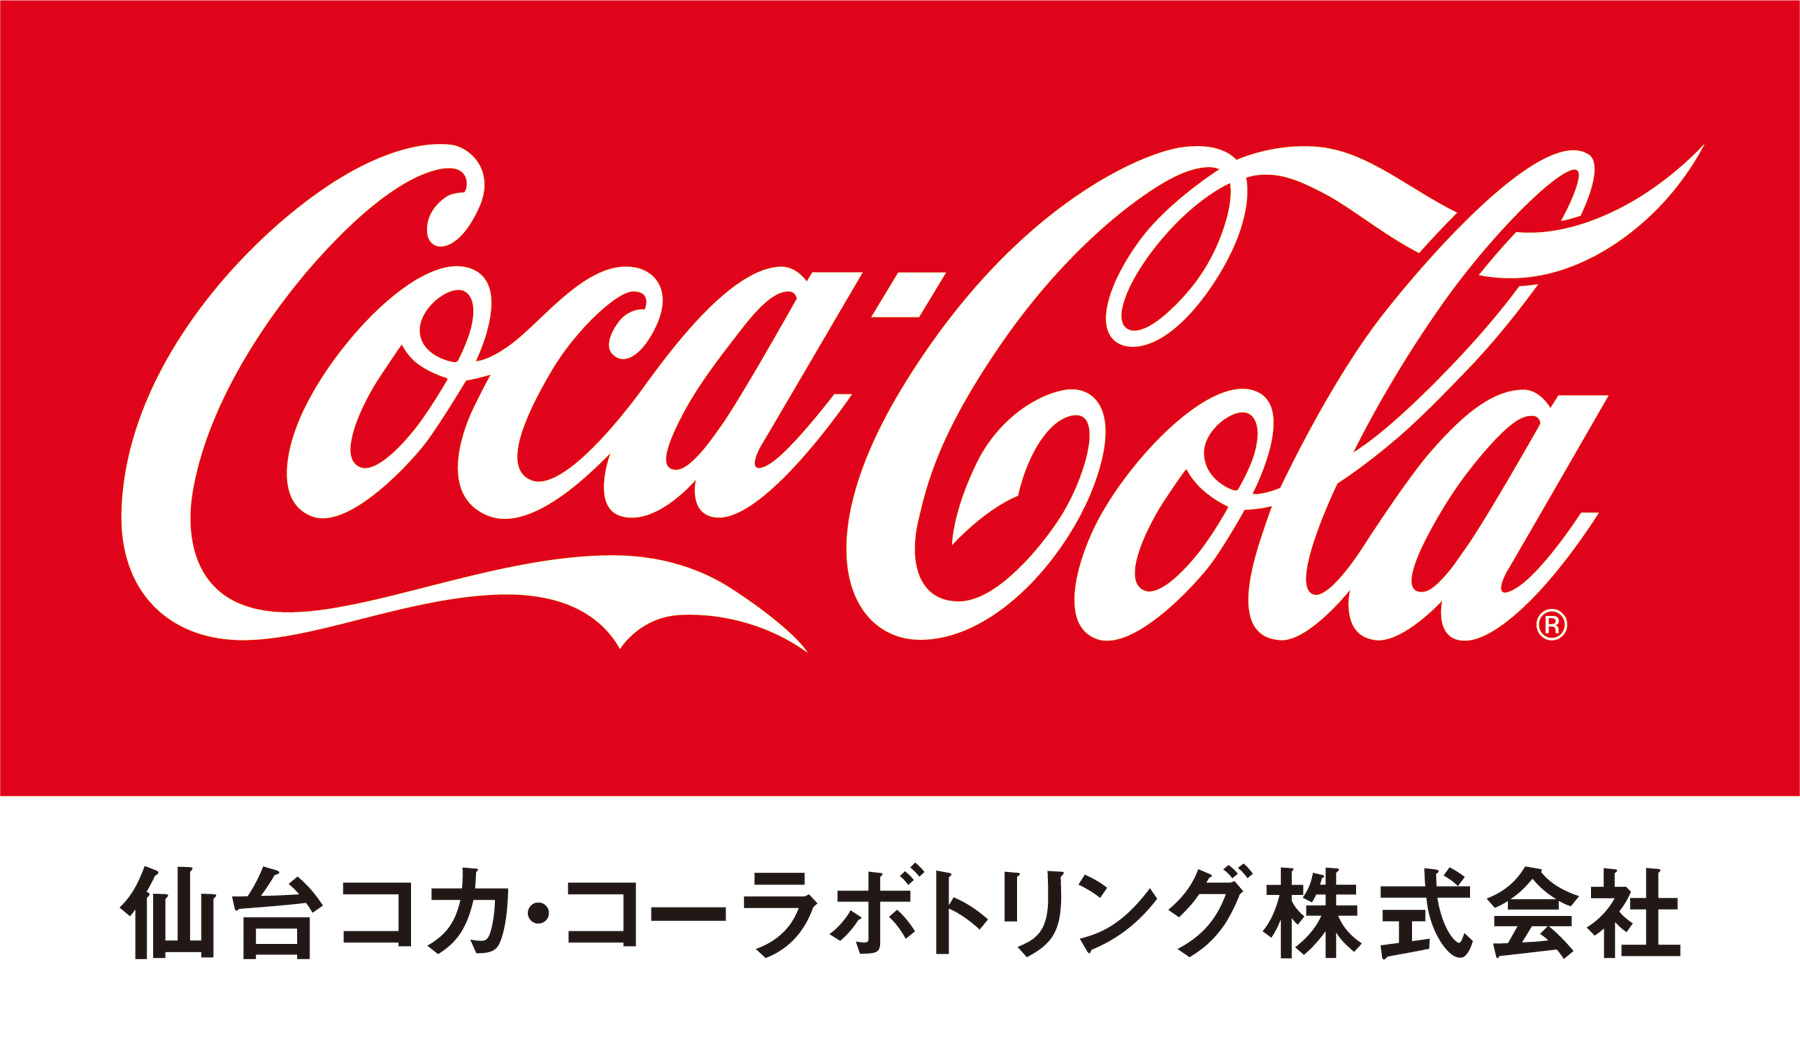 バックナンバー14 J1第22節横浜戦 仙台コカ コーラボトリングマッチデー ホームゲームのご案内 更新